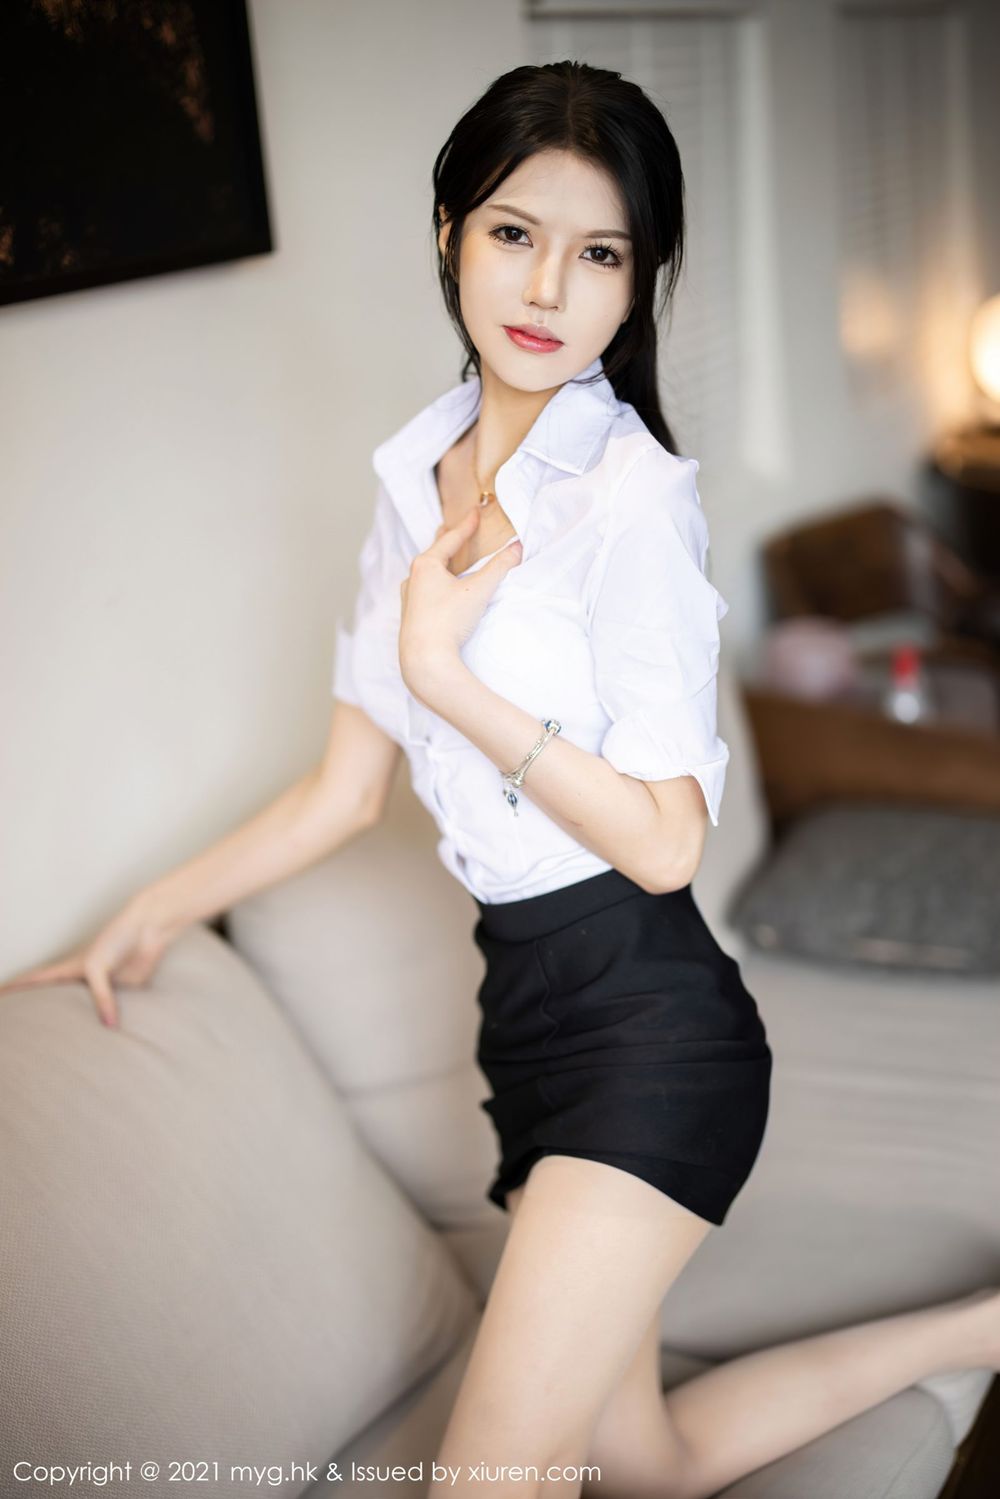 新人模特媛媛酱belle - 白衬衫+黑短裙撩人系列杭州旅拍